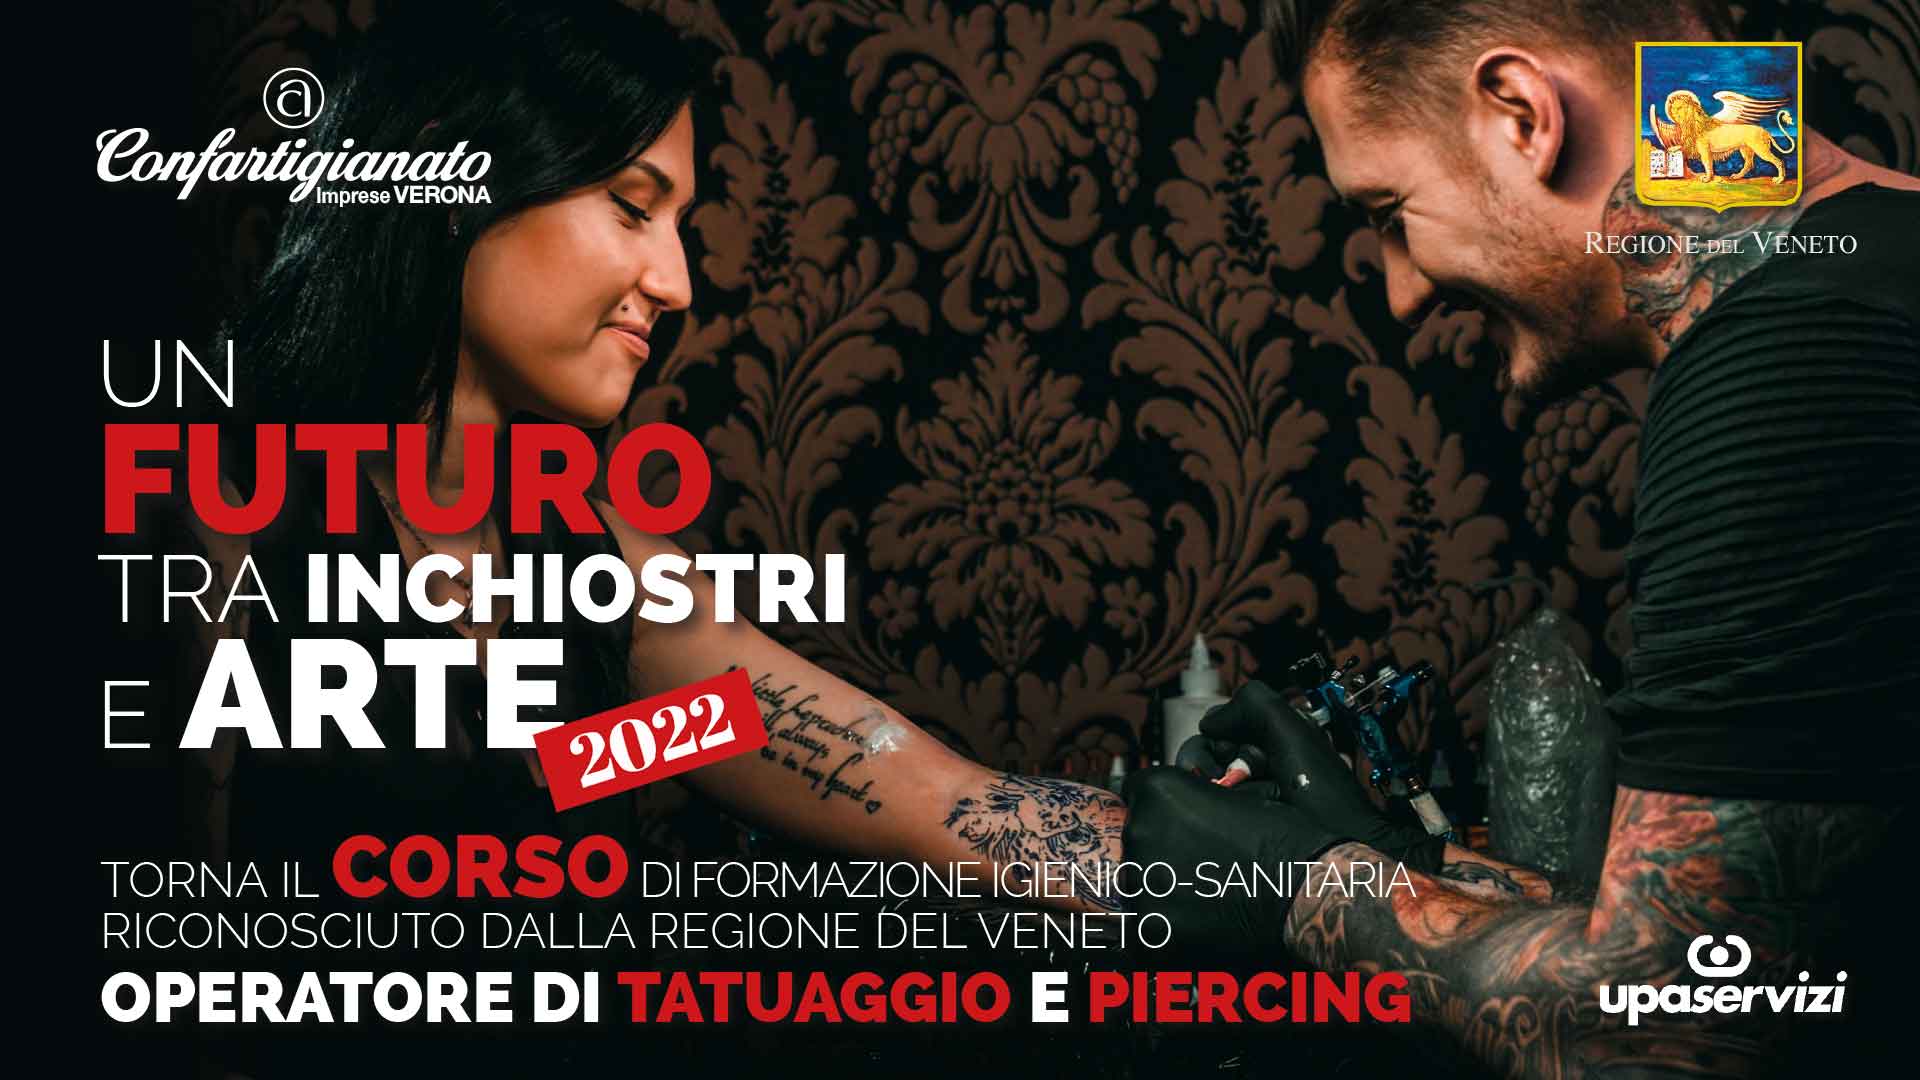 TATUAGGI & PIERCING – Torna il corso a riconoscimento regionale per l’abilitazione all’attività di tatuaggio e piercing. Crediti formativi per estetiste